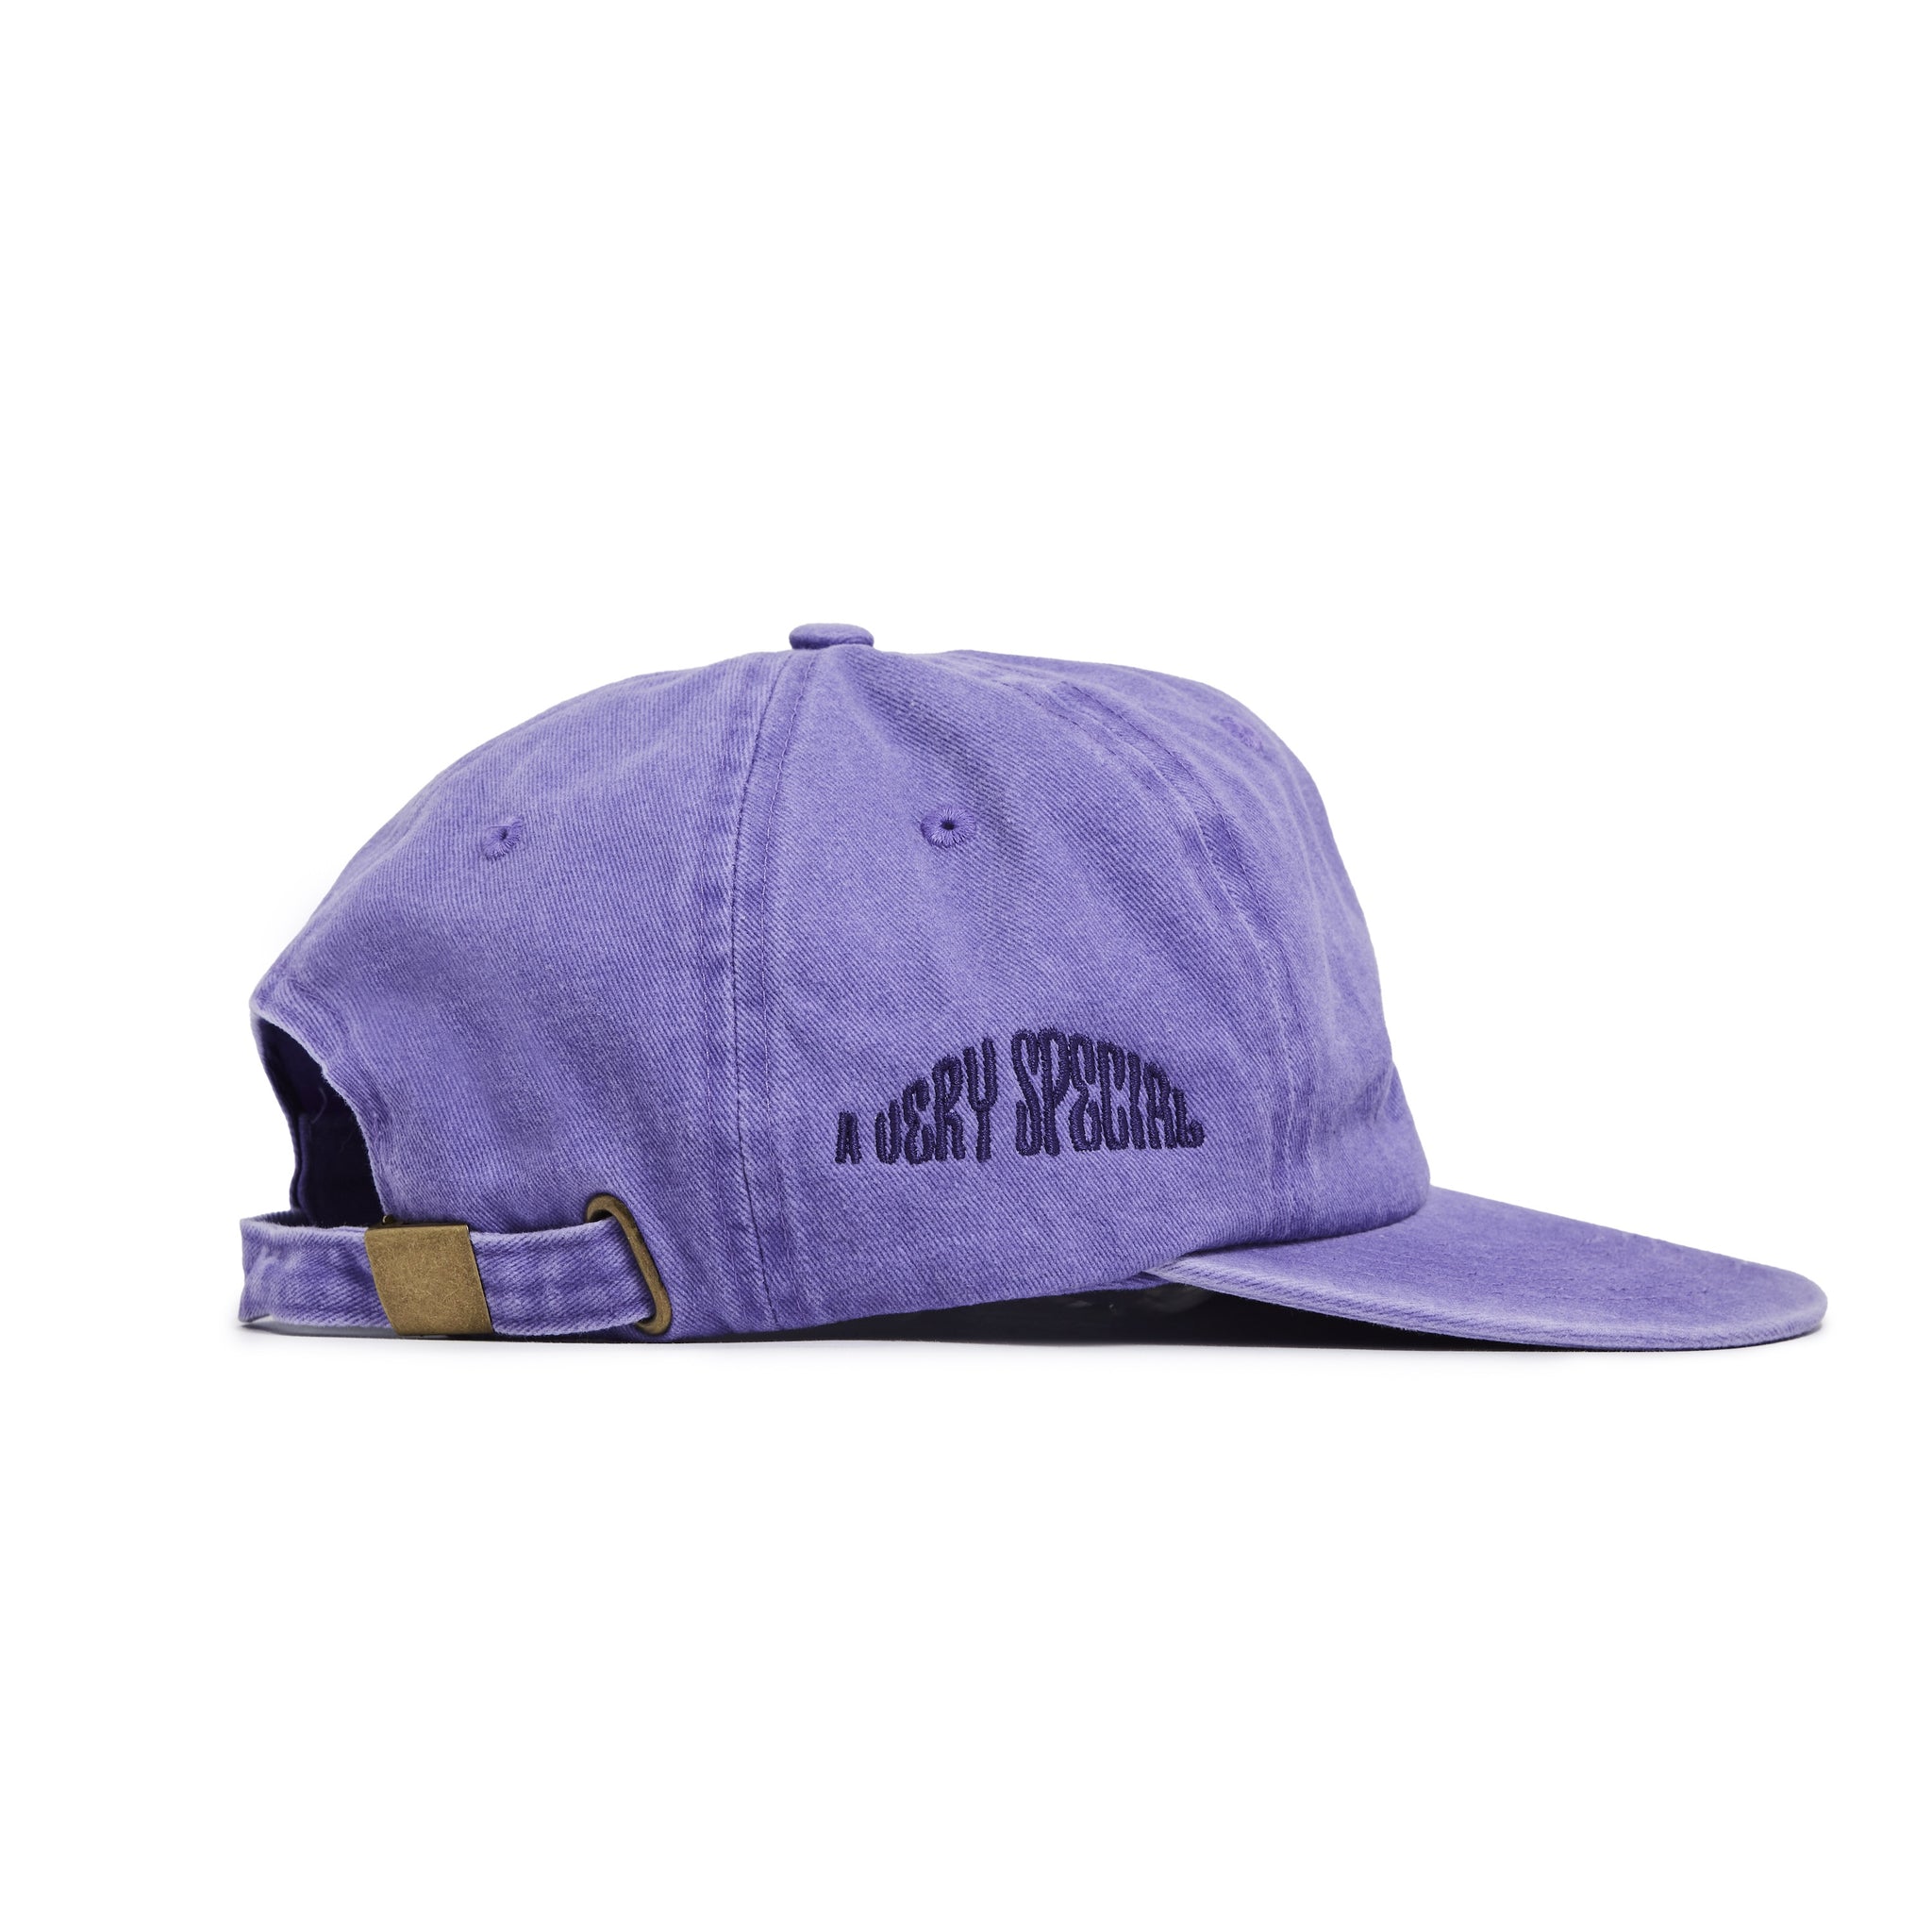 BARBOSA SIARGO TRIP CAP - Purple